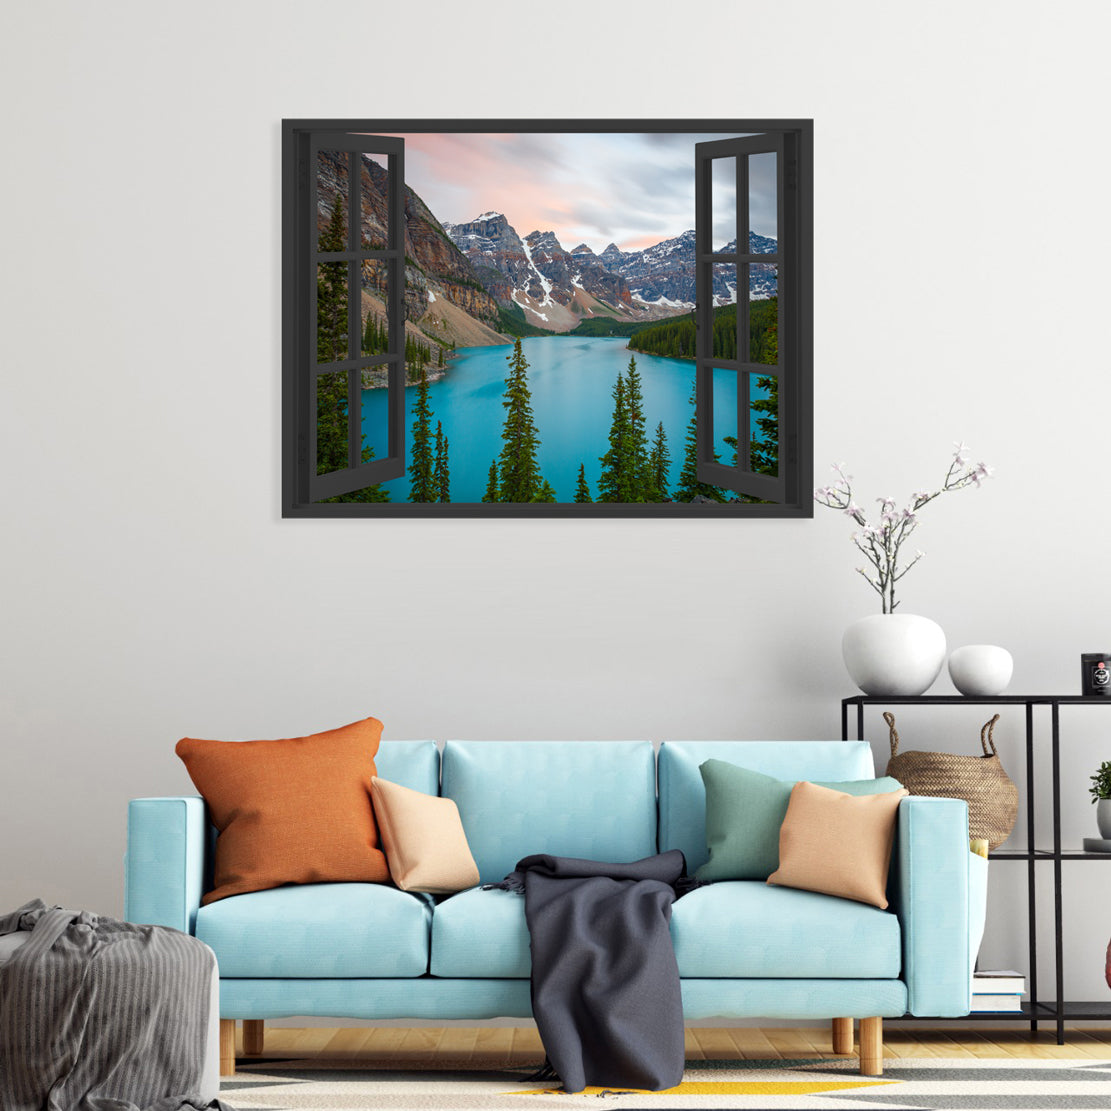 Wandbild Berge und See für Kategorie Wandbilder mit Landschaften und Natur